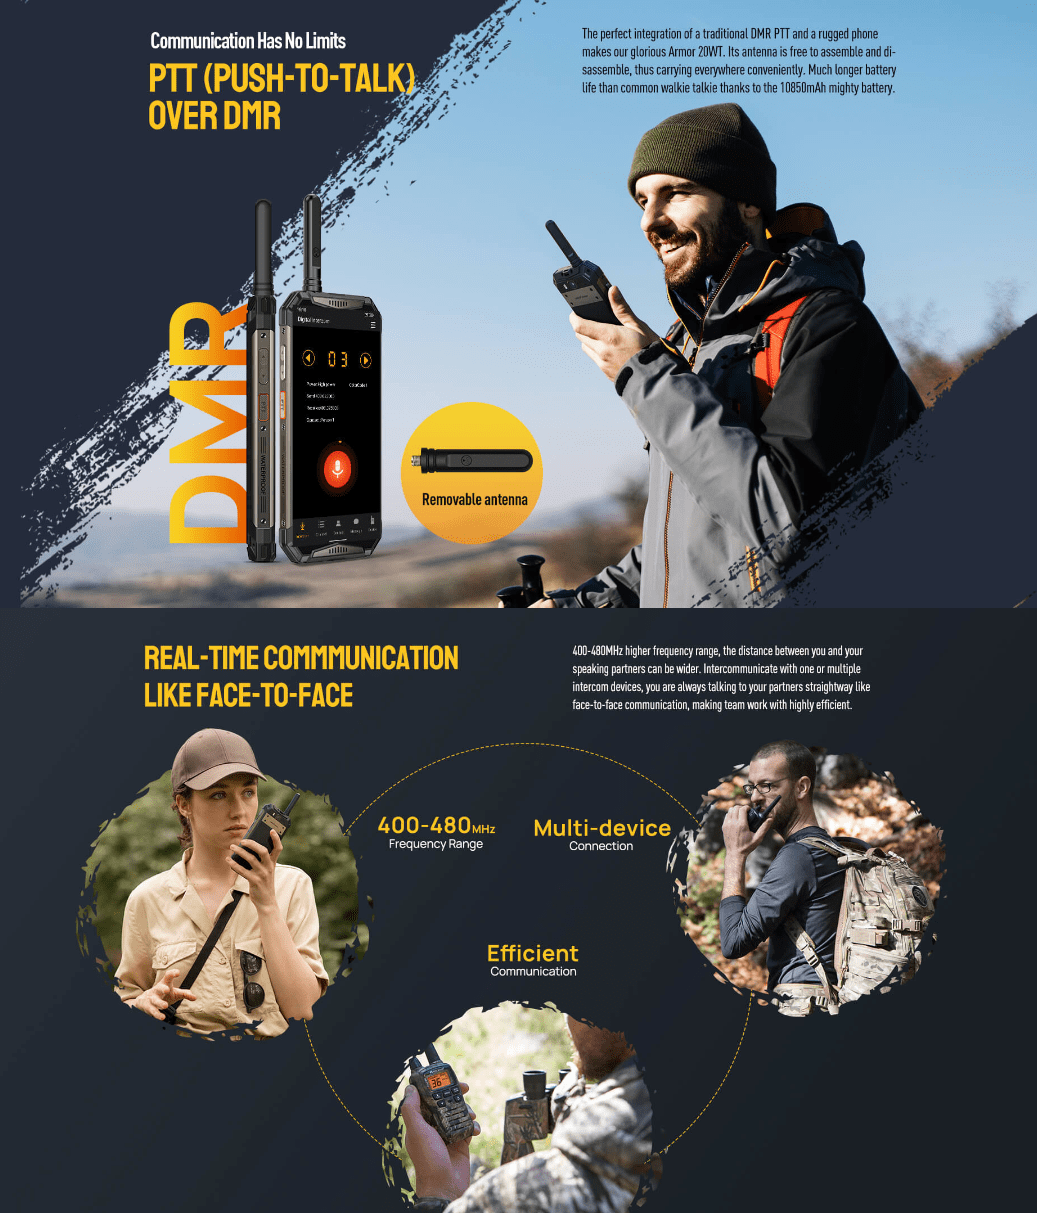 Ulefone Armor 3t - Smartphone Resistente Al Agua Y El Polvo